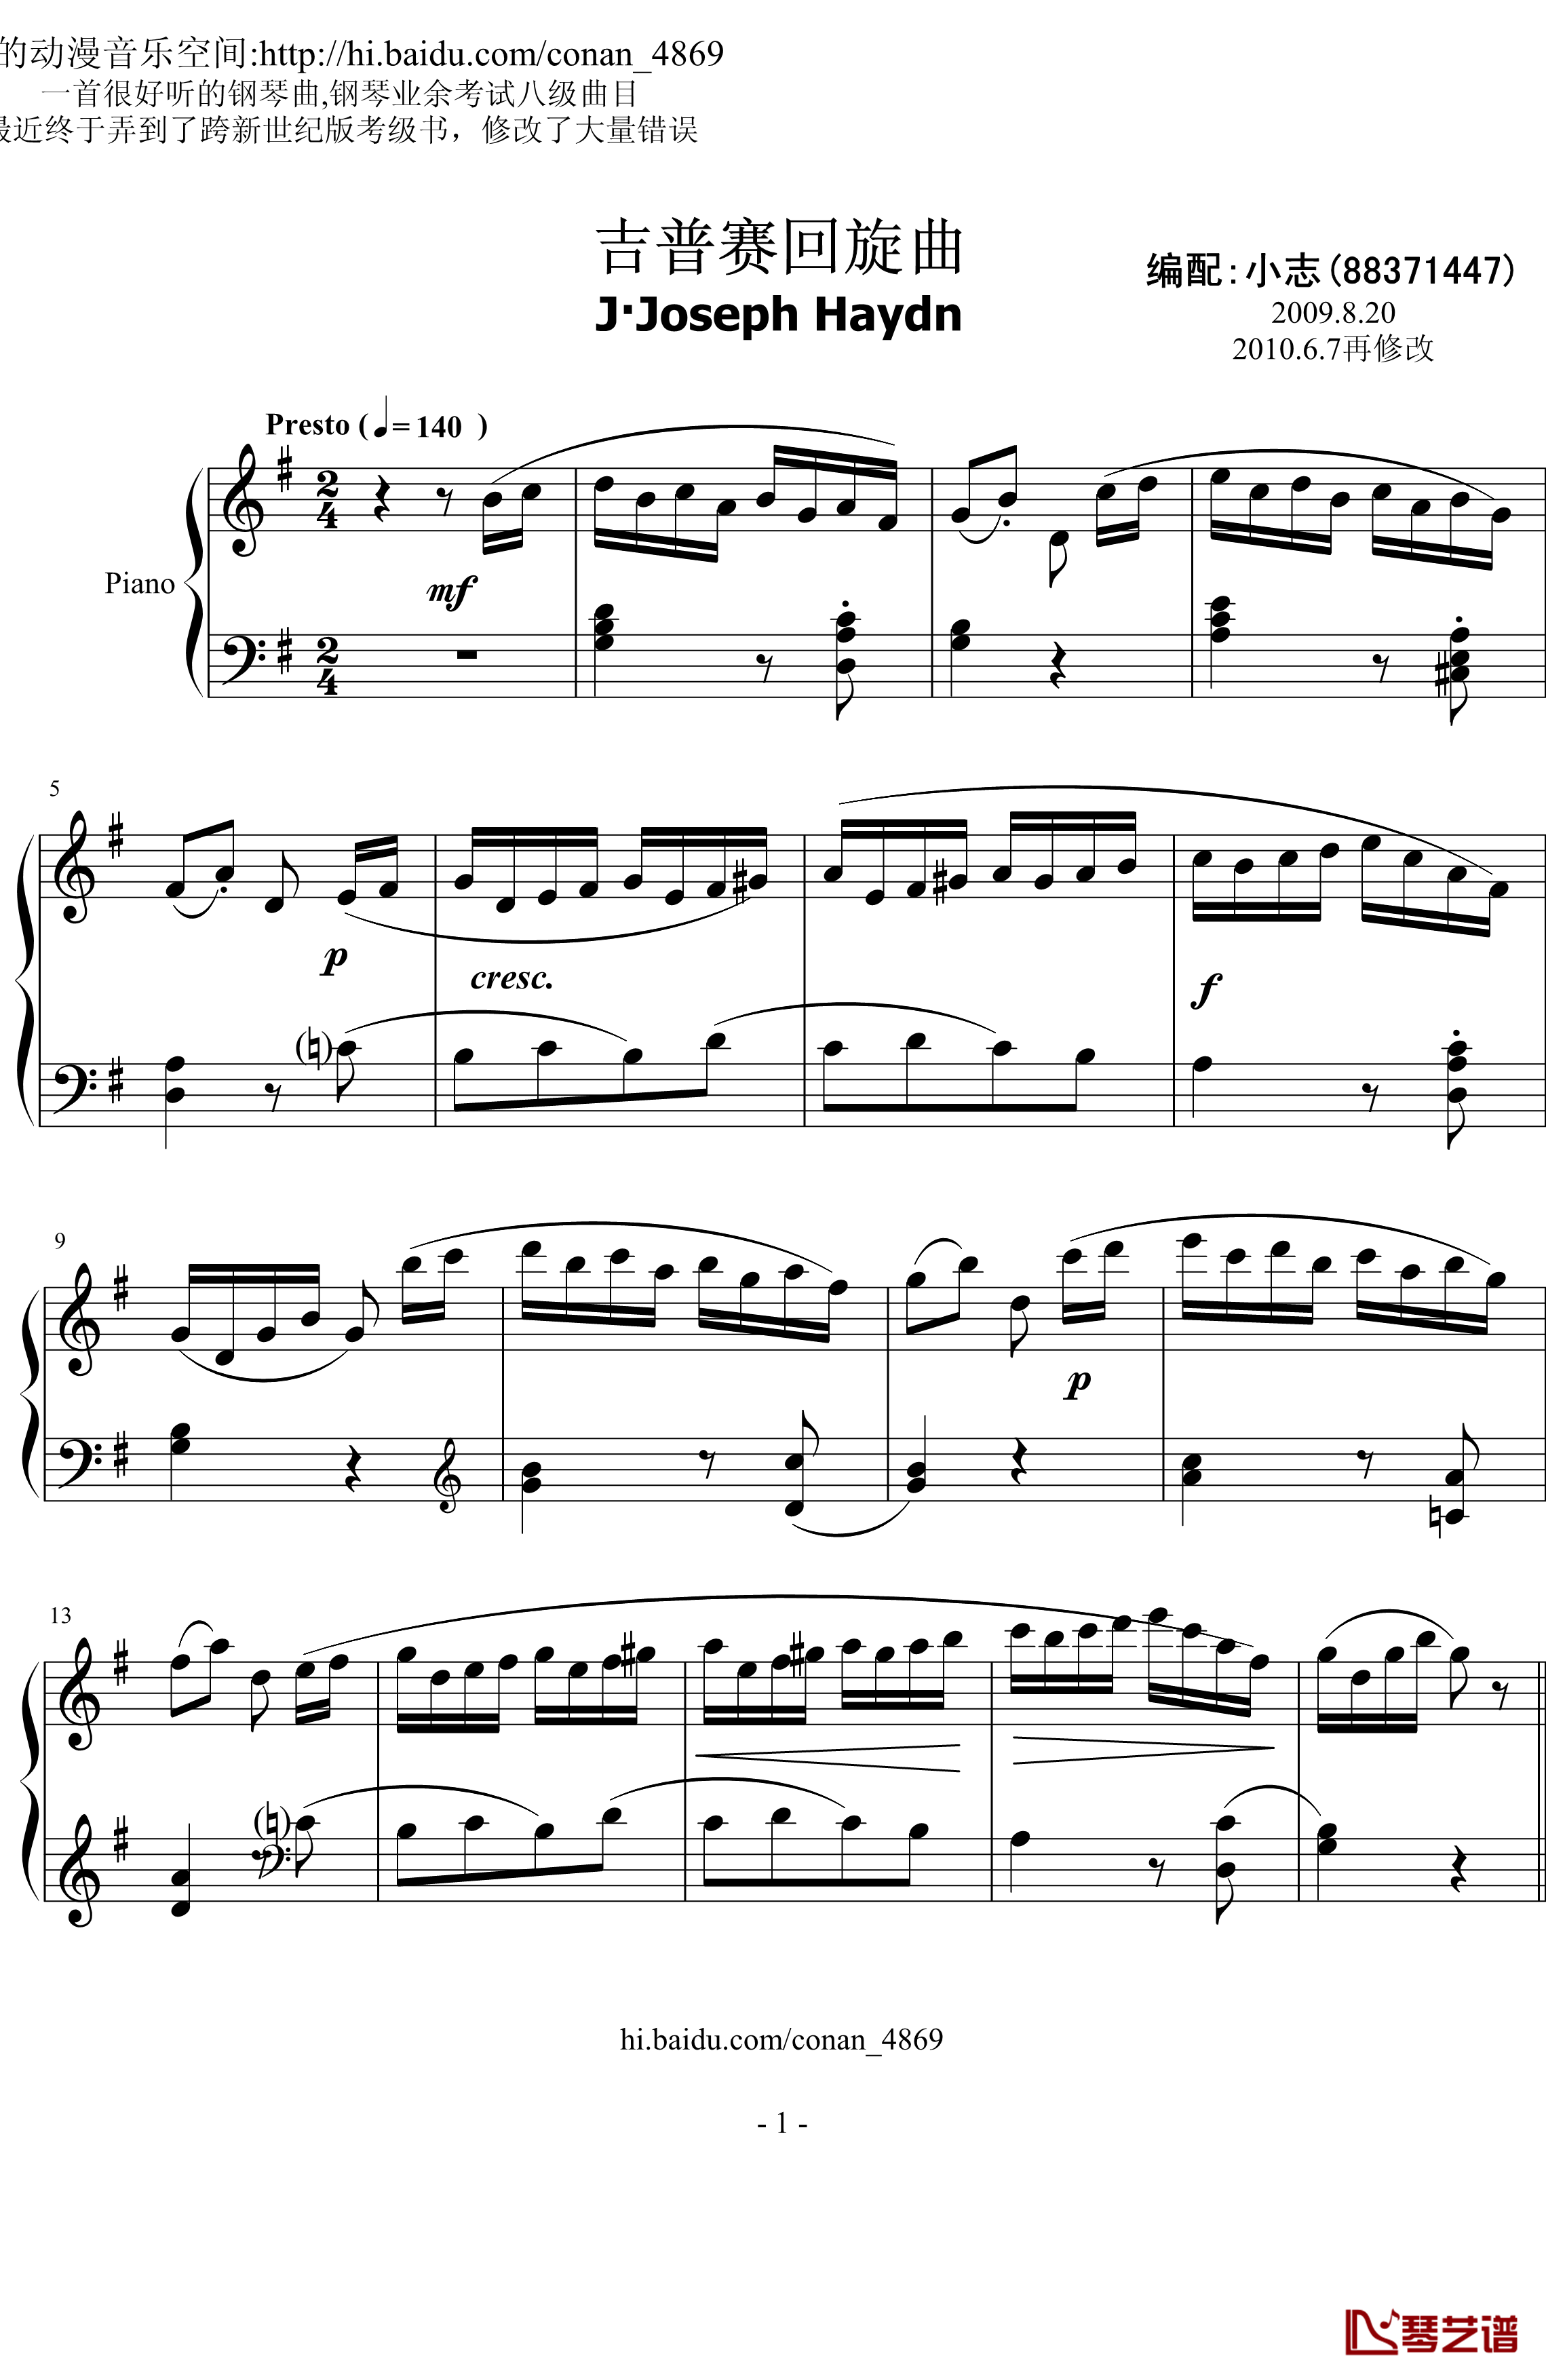 吉普赛回旋曲钢琴谱-海顿1